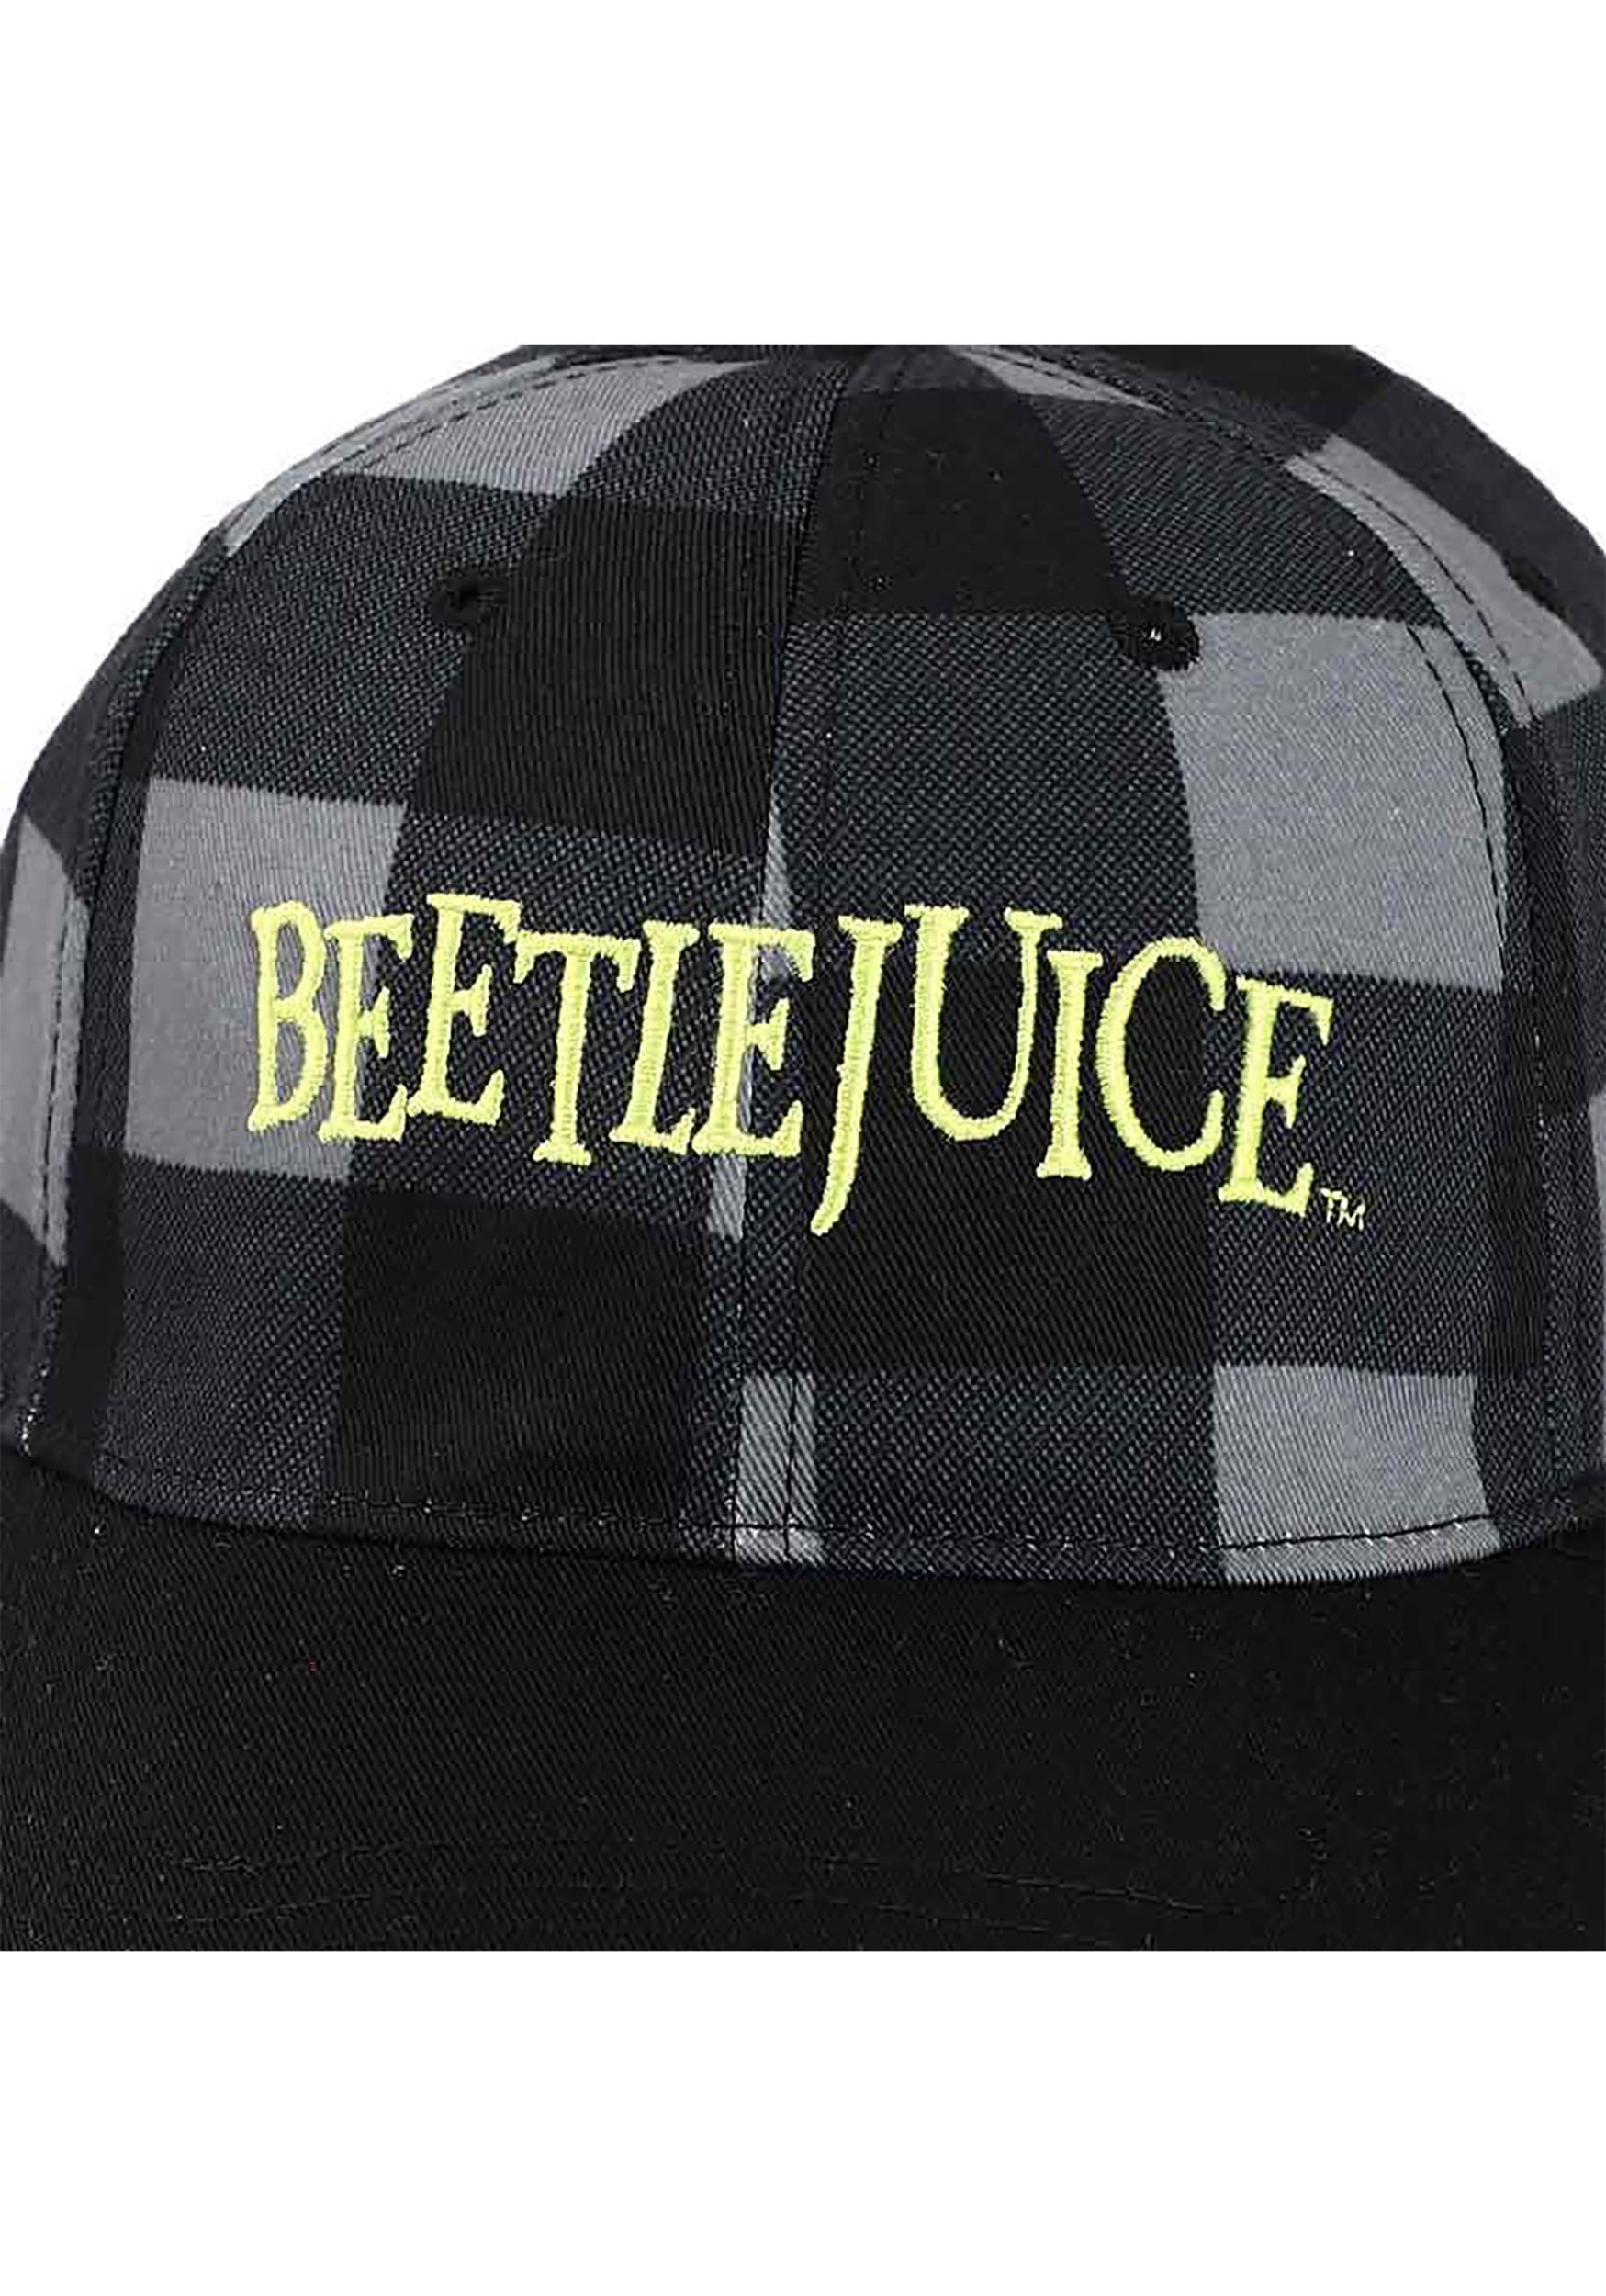 Embroidered Beetlejuice Logo Twill Plaid Hat